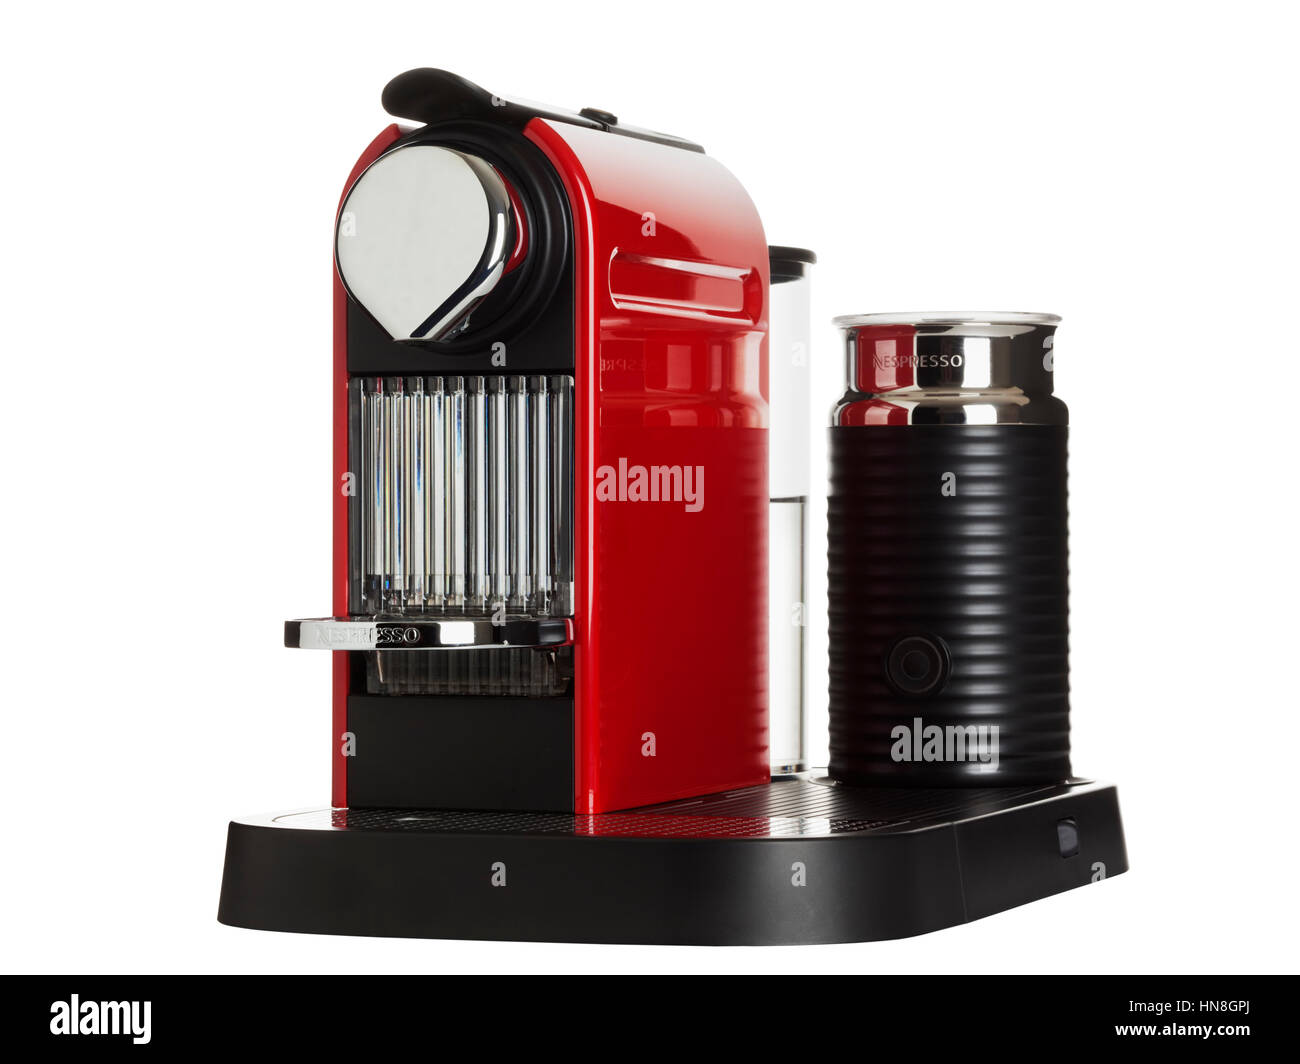 Citiz Nespresso rouge plus une dosette de lait machine faite par Krups isolé sur fond blanc Banque D'Images